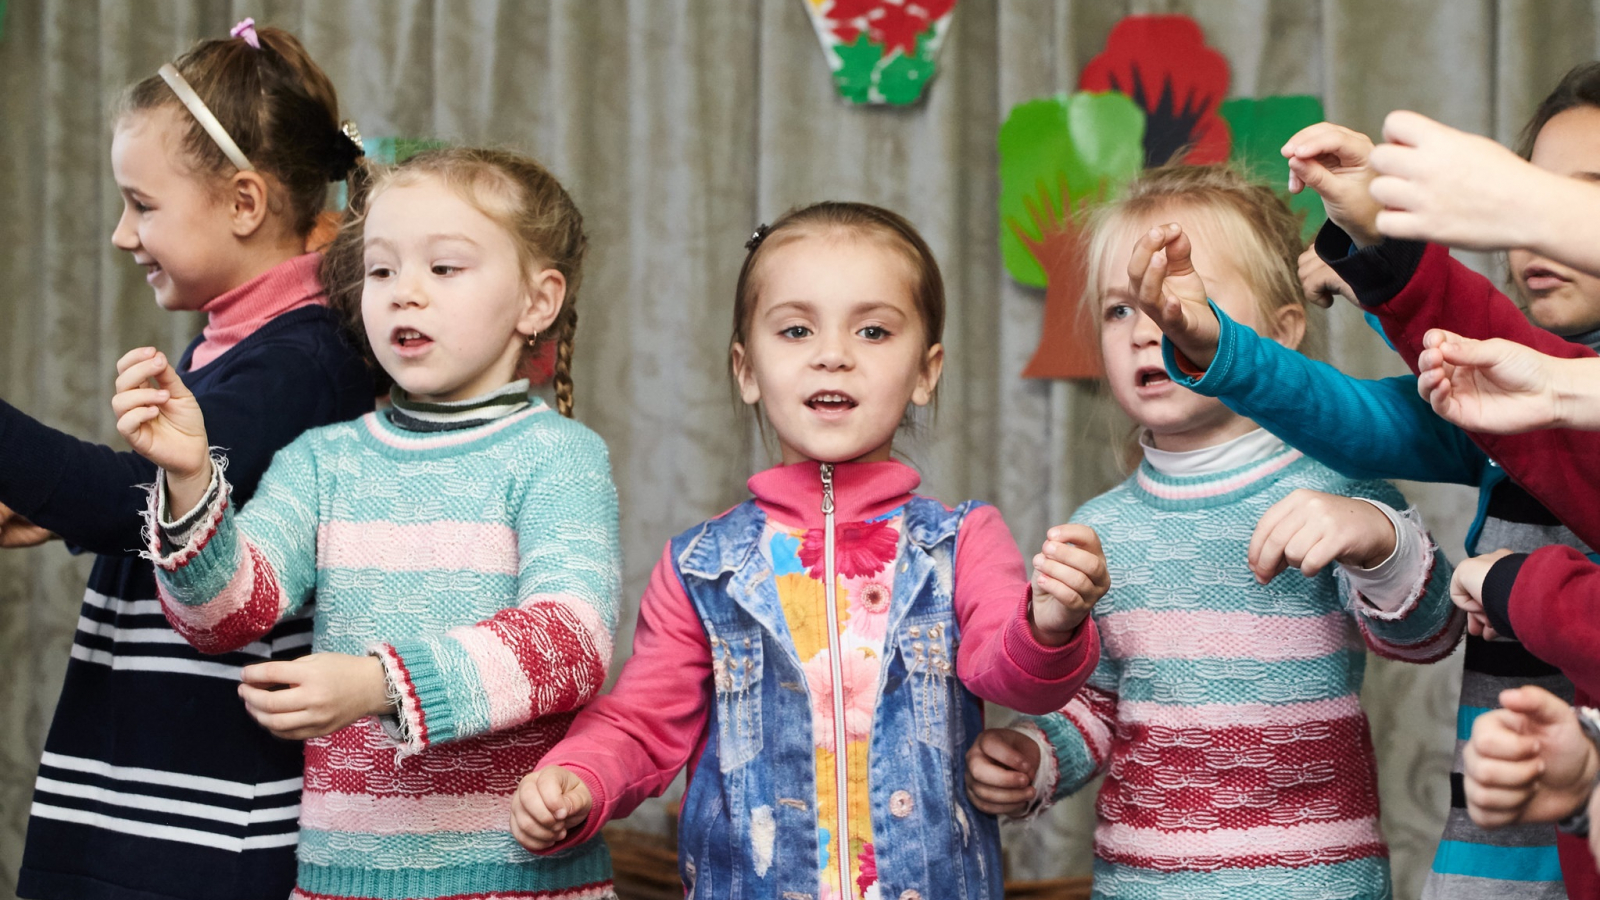 Ukraine: How modernising preschools improves the lives of people in Bakhmut and Kramatorsk